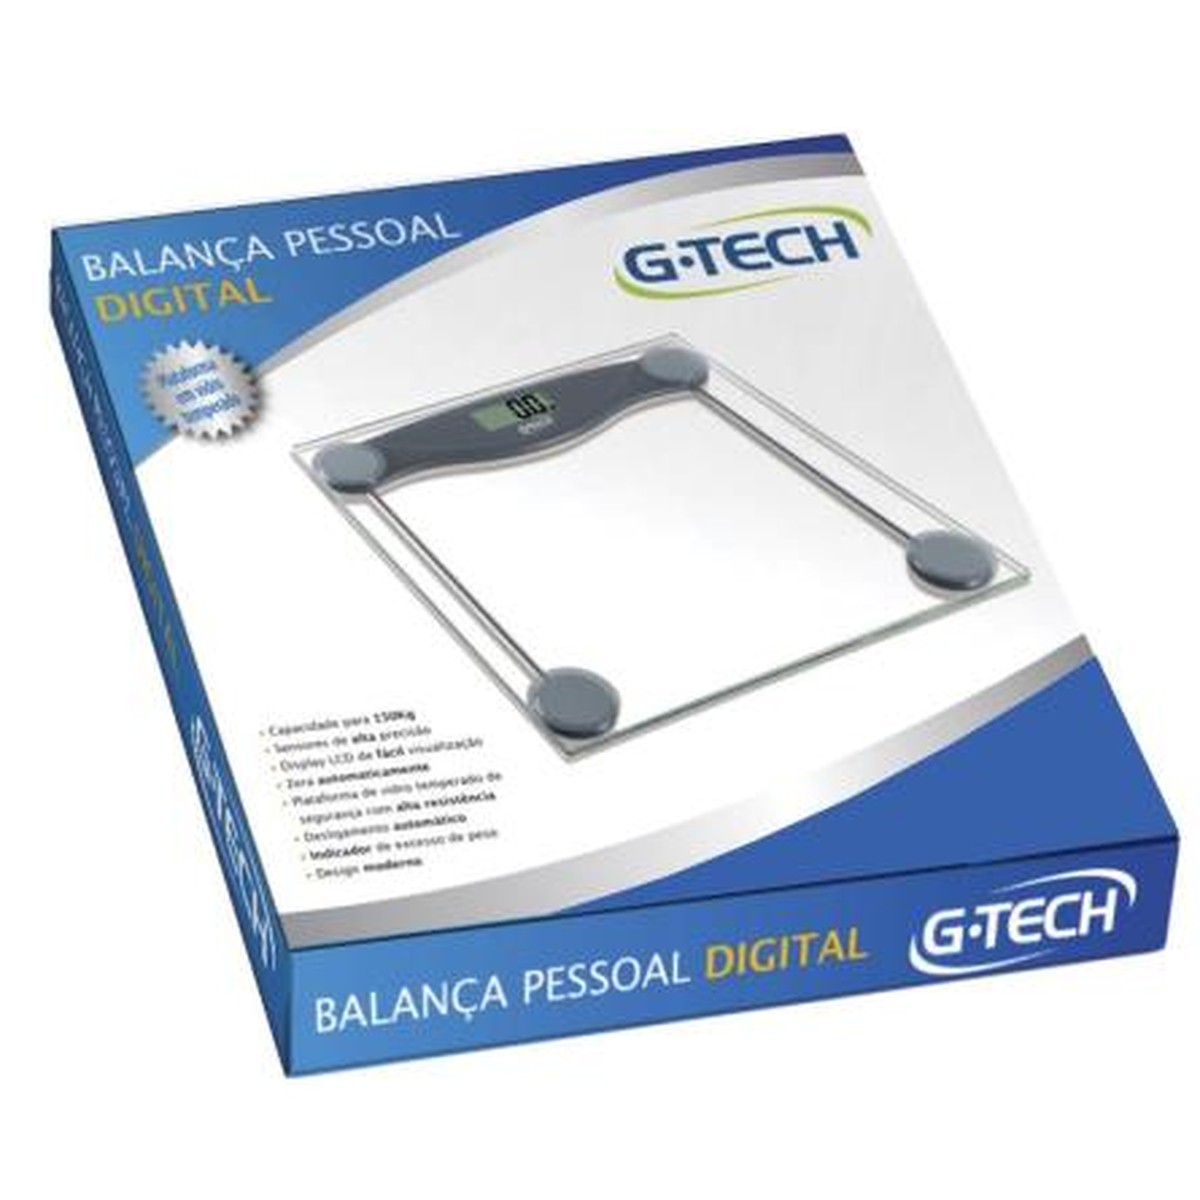 Foto do produto Balança Digital Glass 10 G-tech